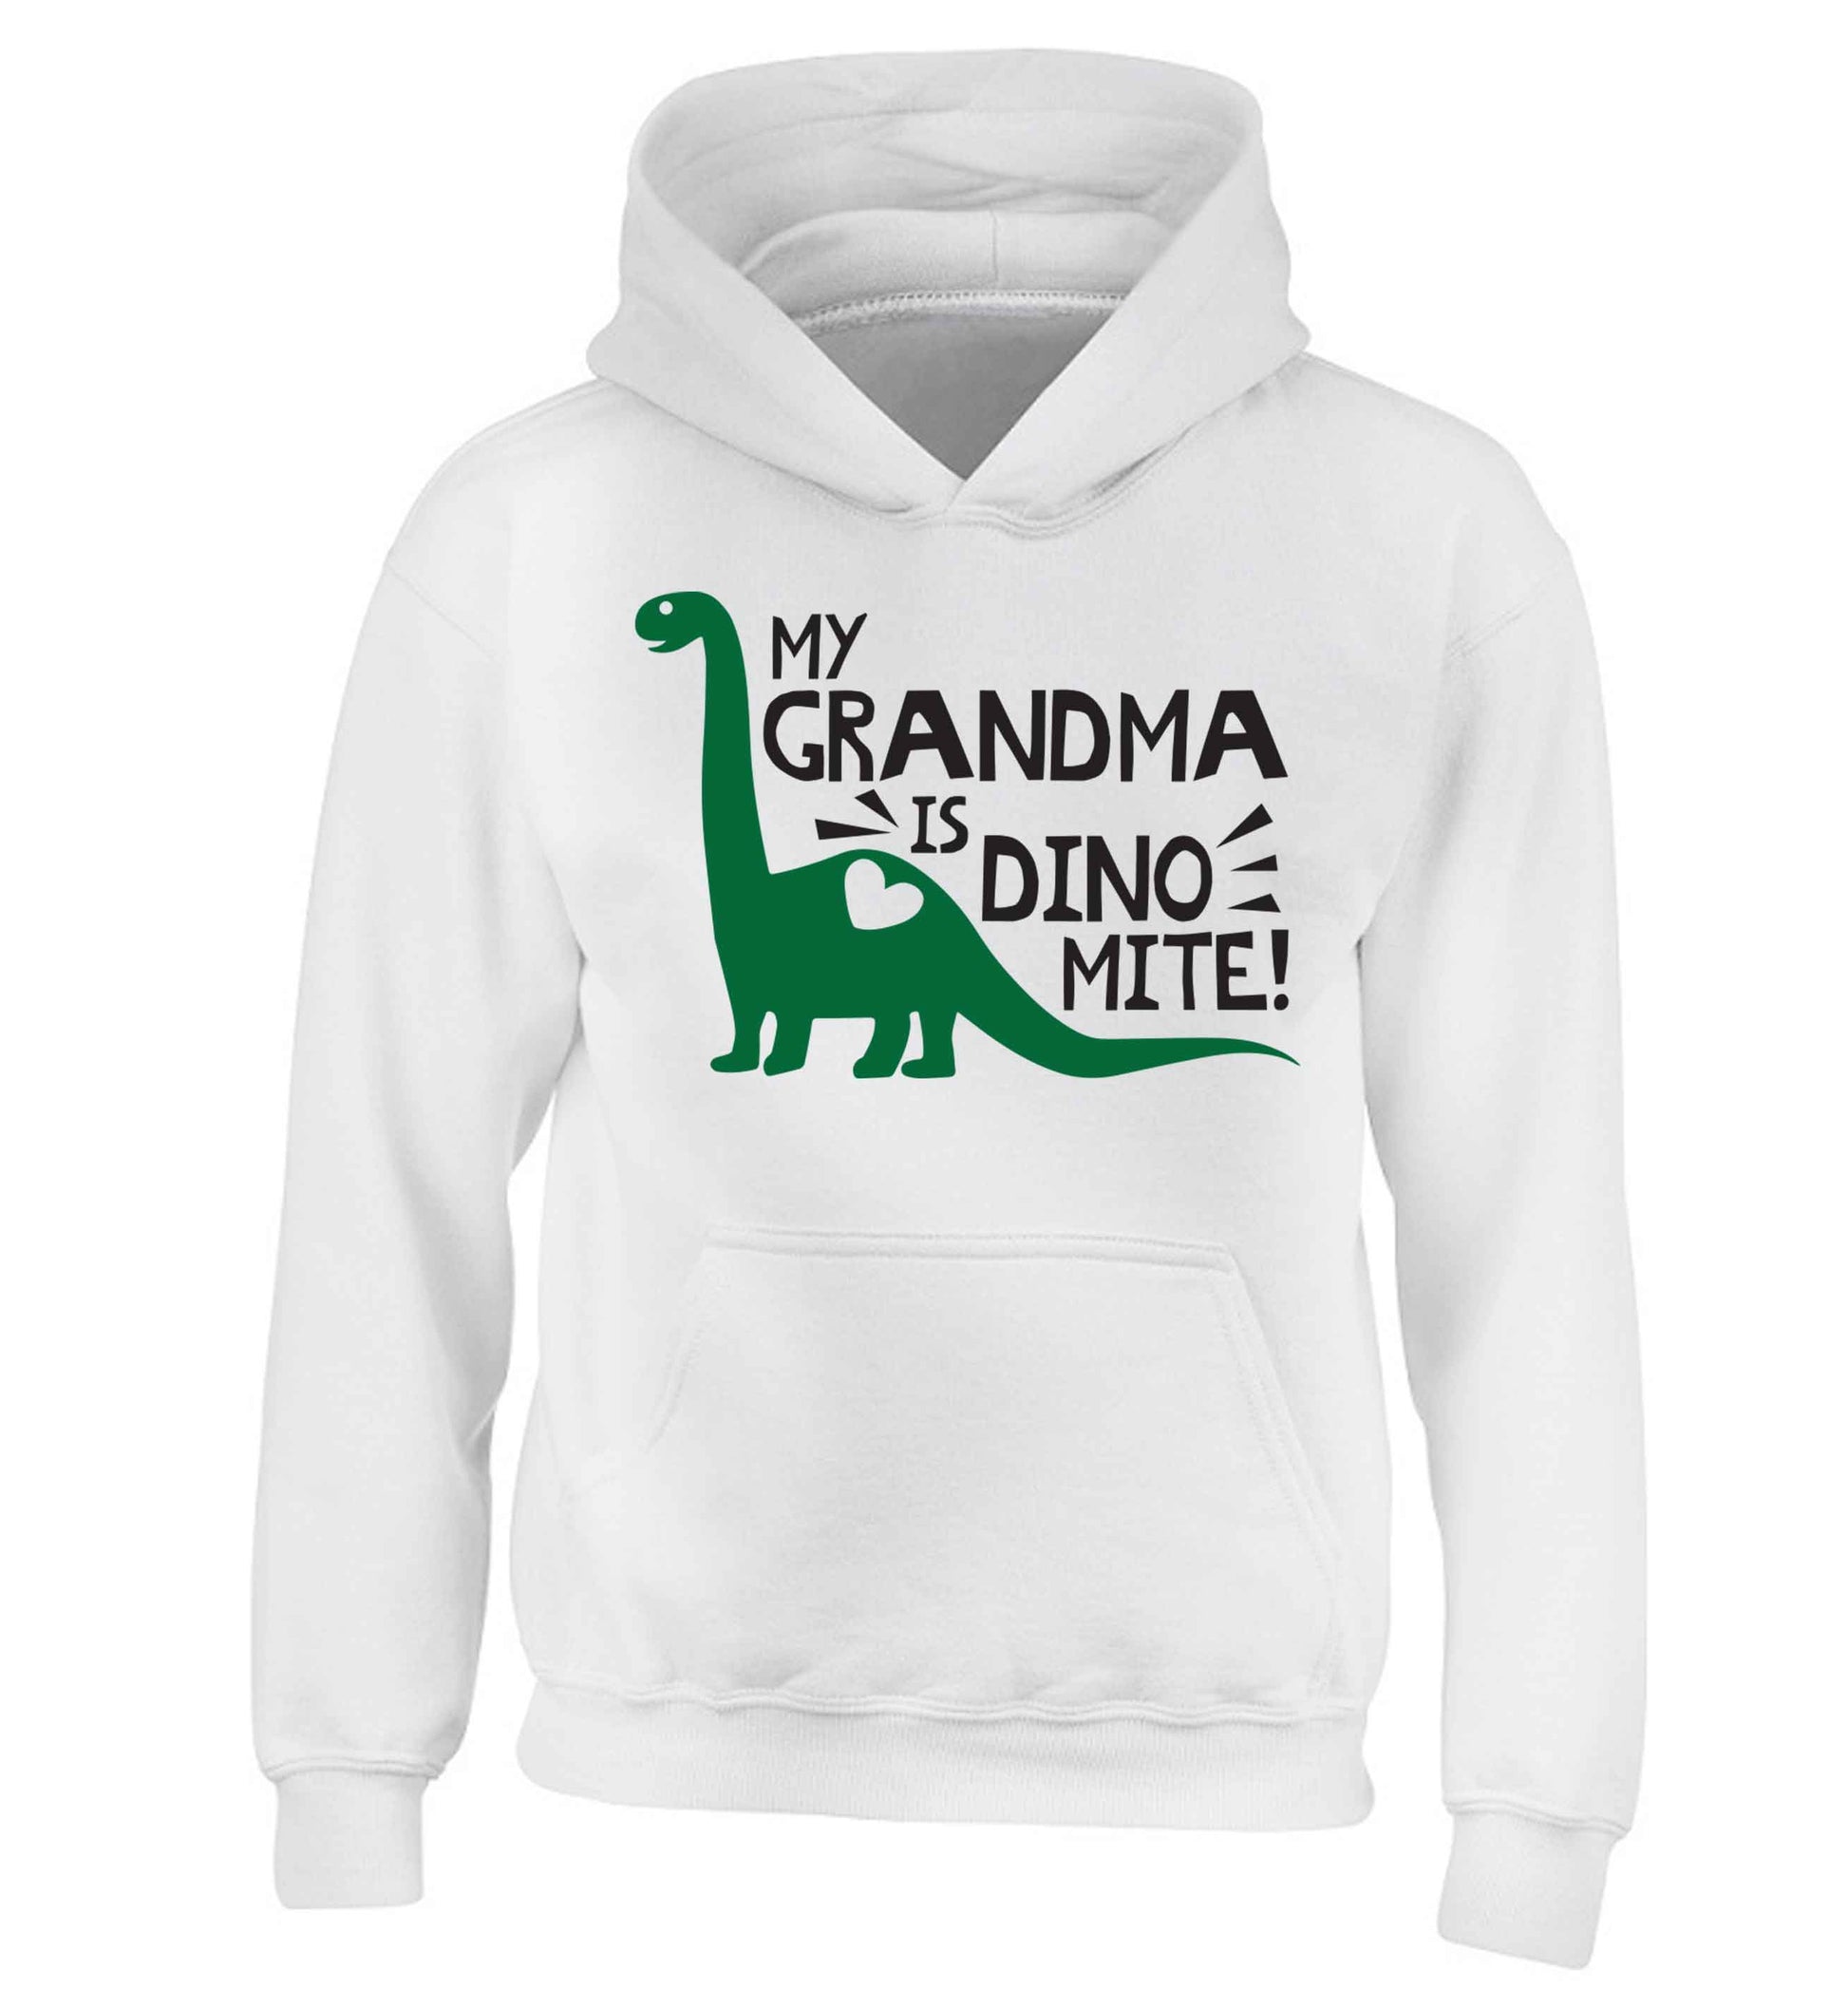 My grandma is dinomite! children's white hoodie 12-13 Years